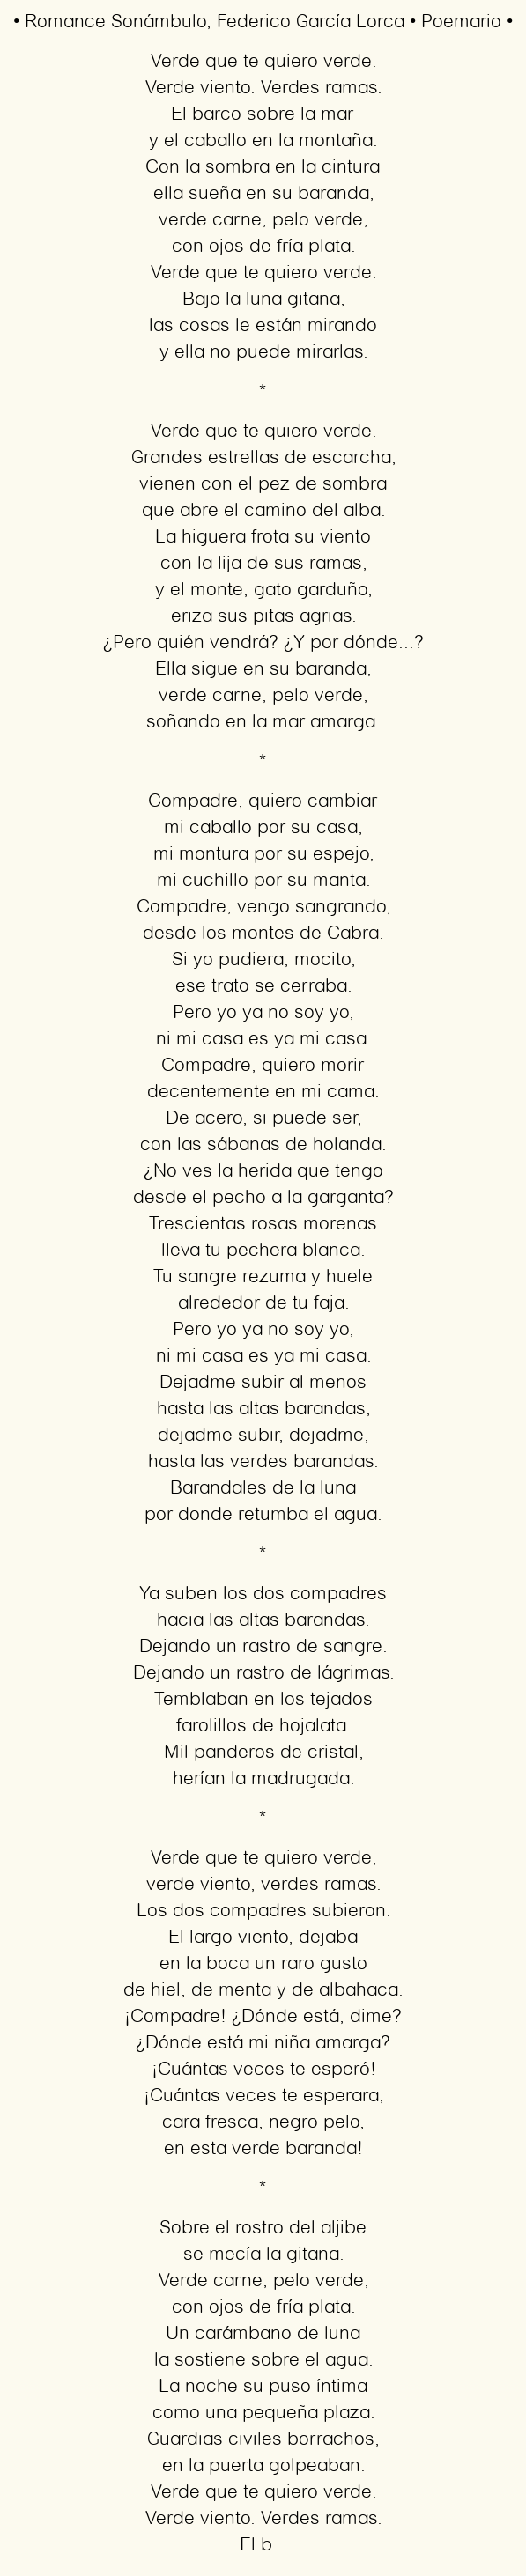 Análisis del romance sonámbulo: una mirada profunda a la poesía de Federico García Lorca